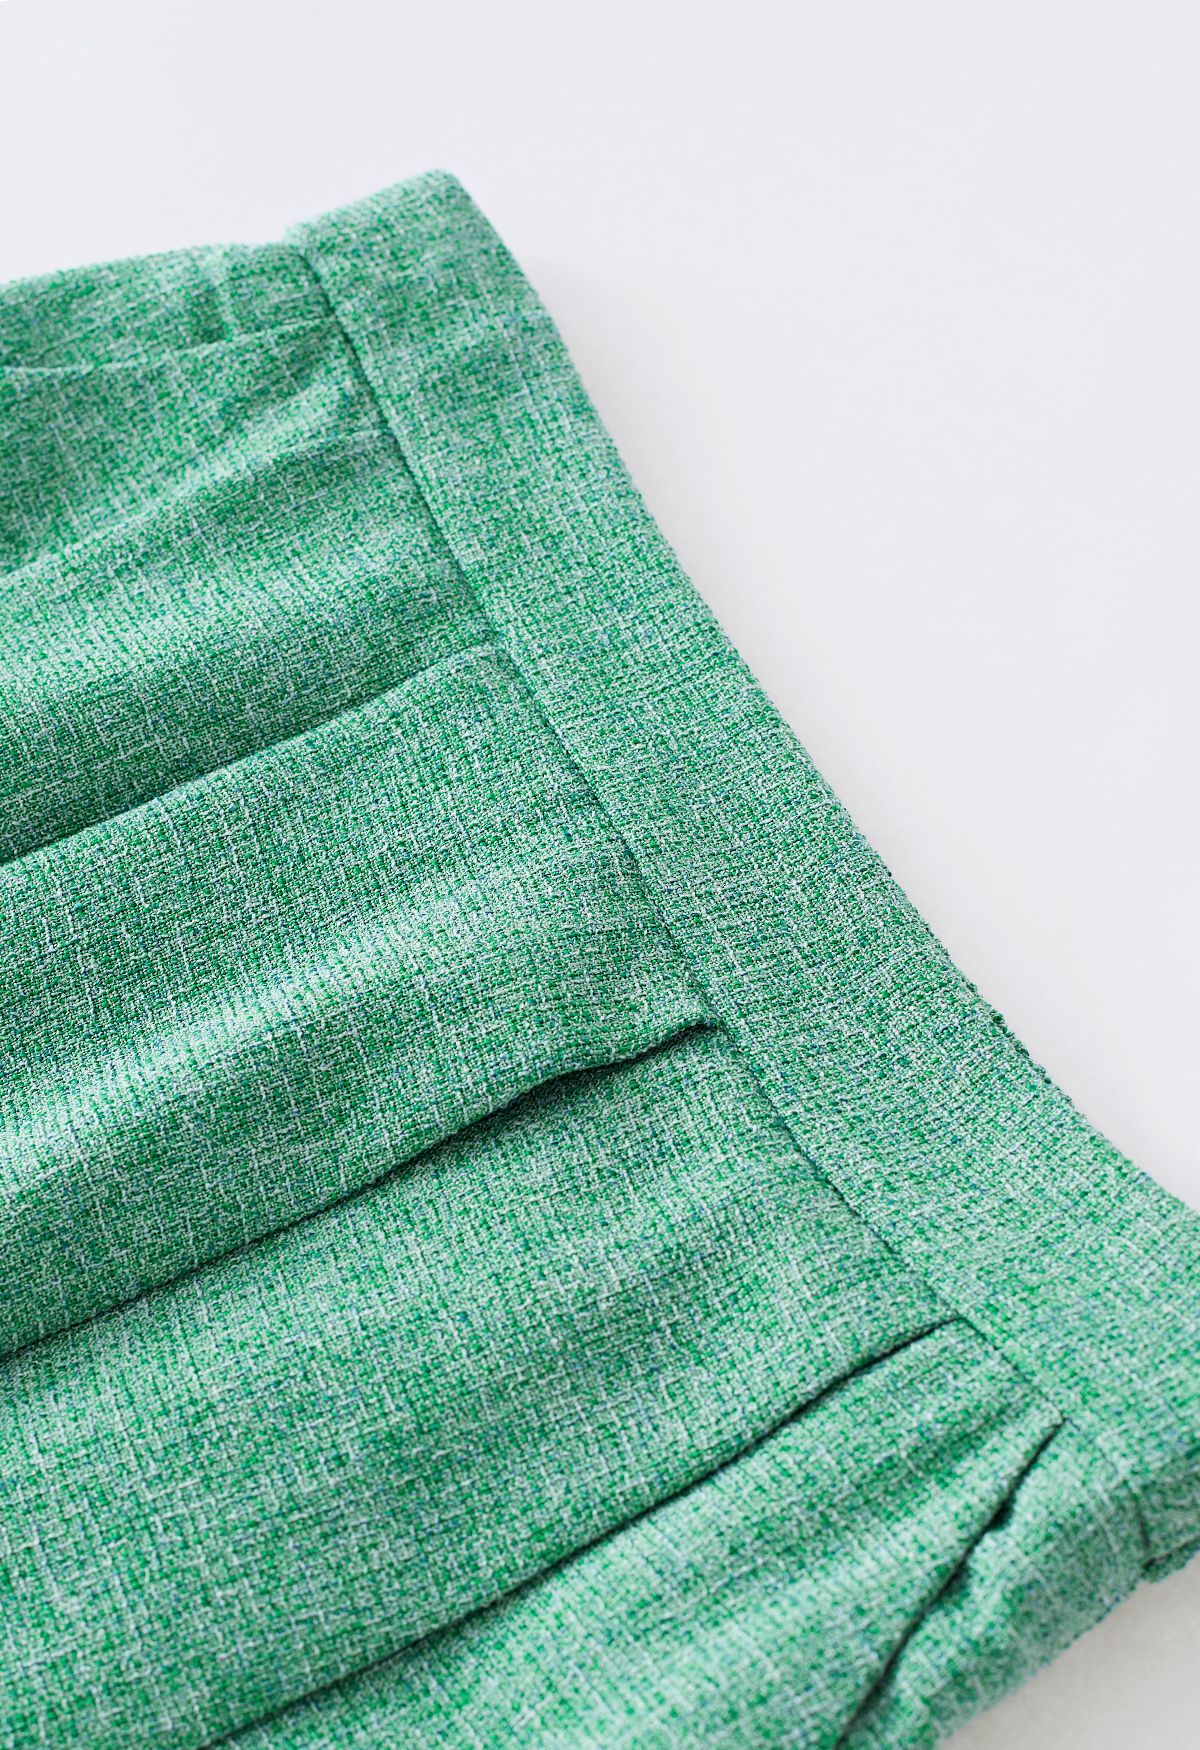 Side Pocket Pleated Tweed Midi Skirt